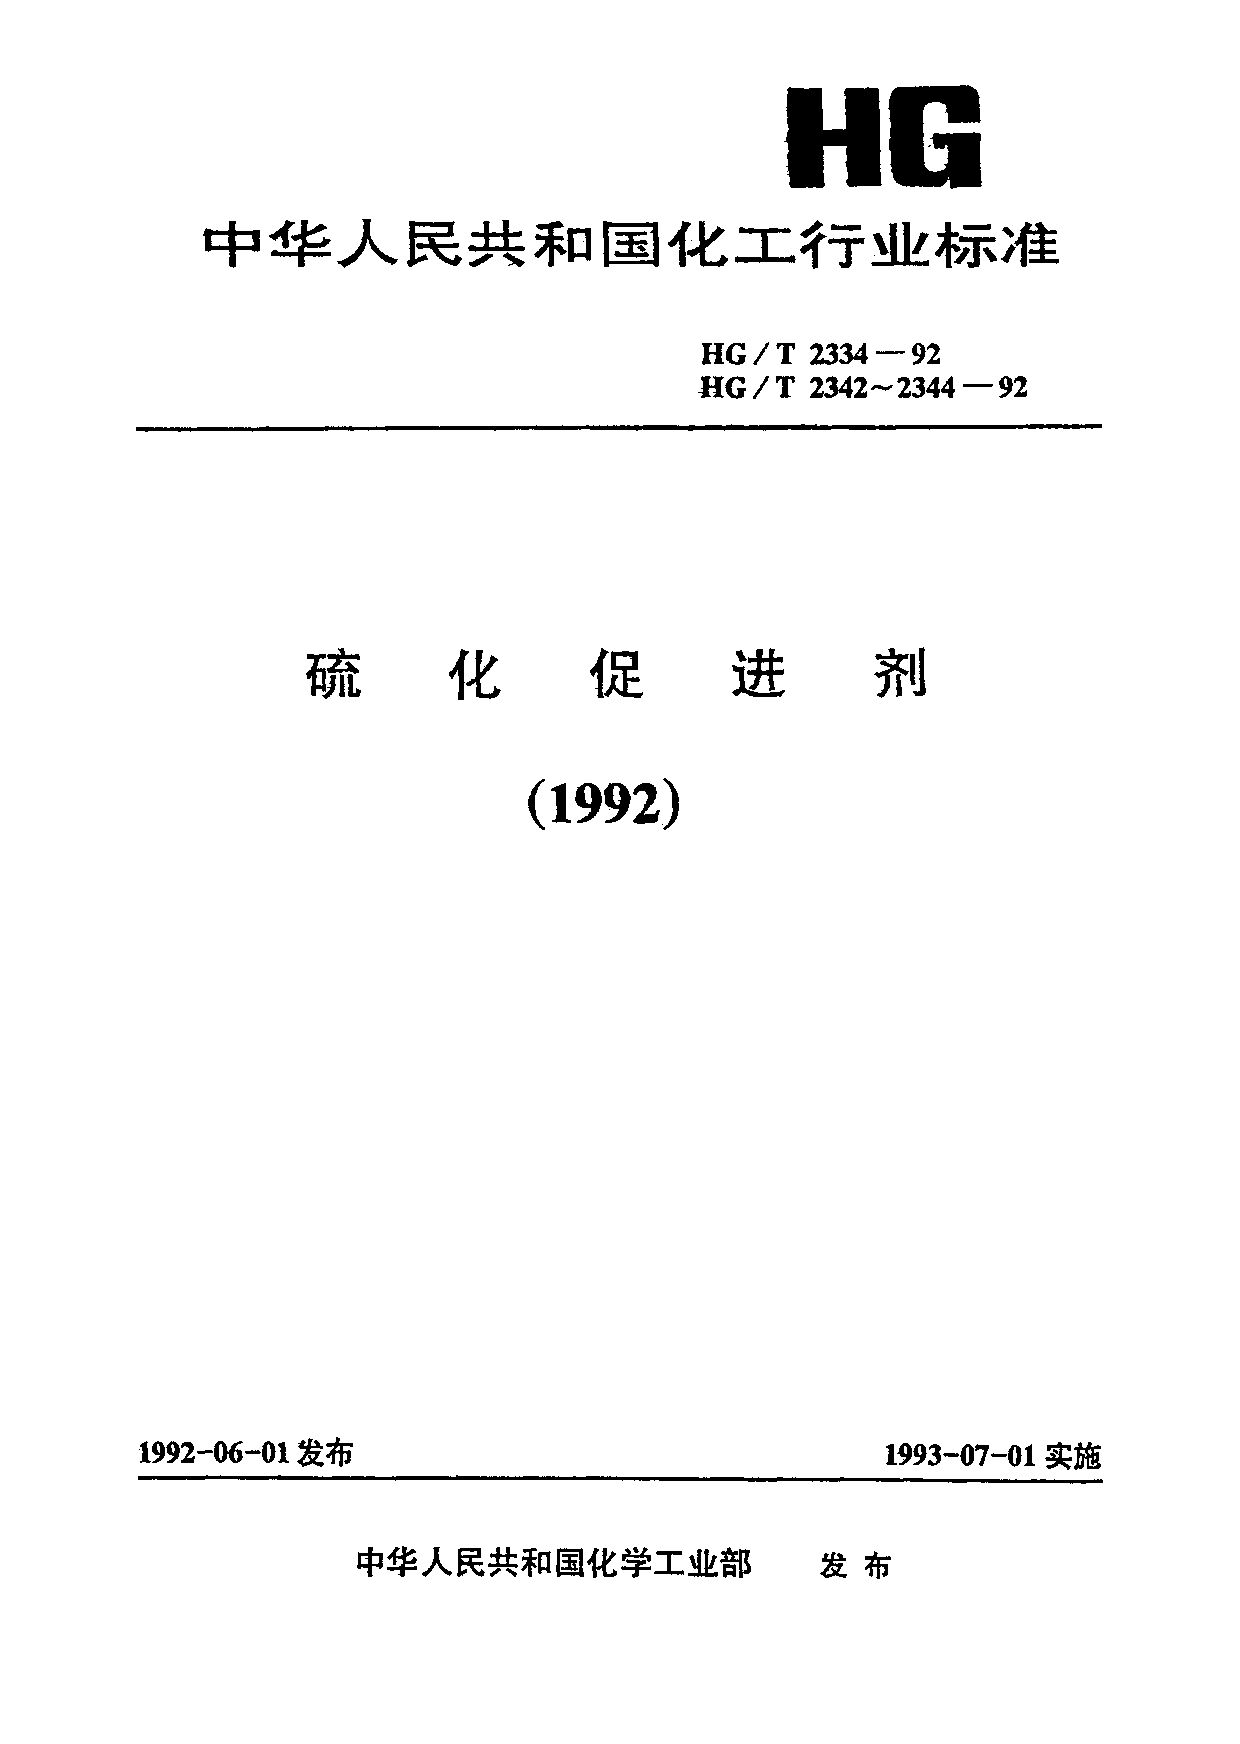 HG/T 2344-1992封面图